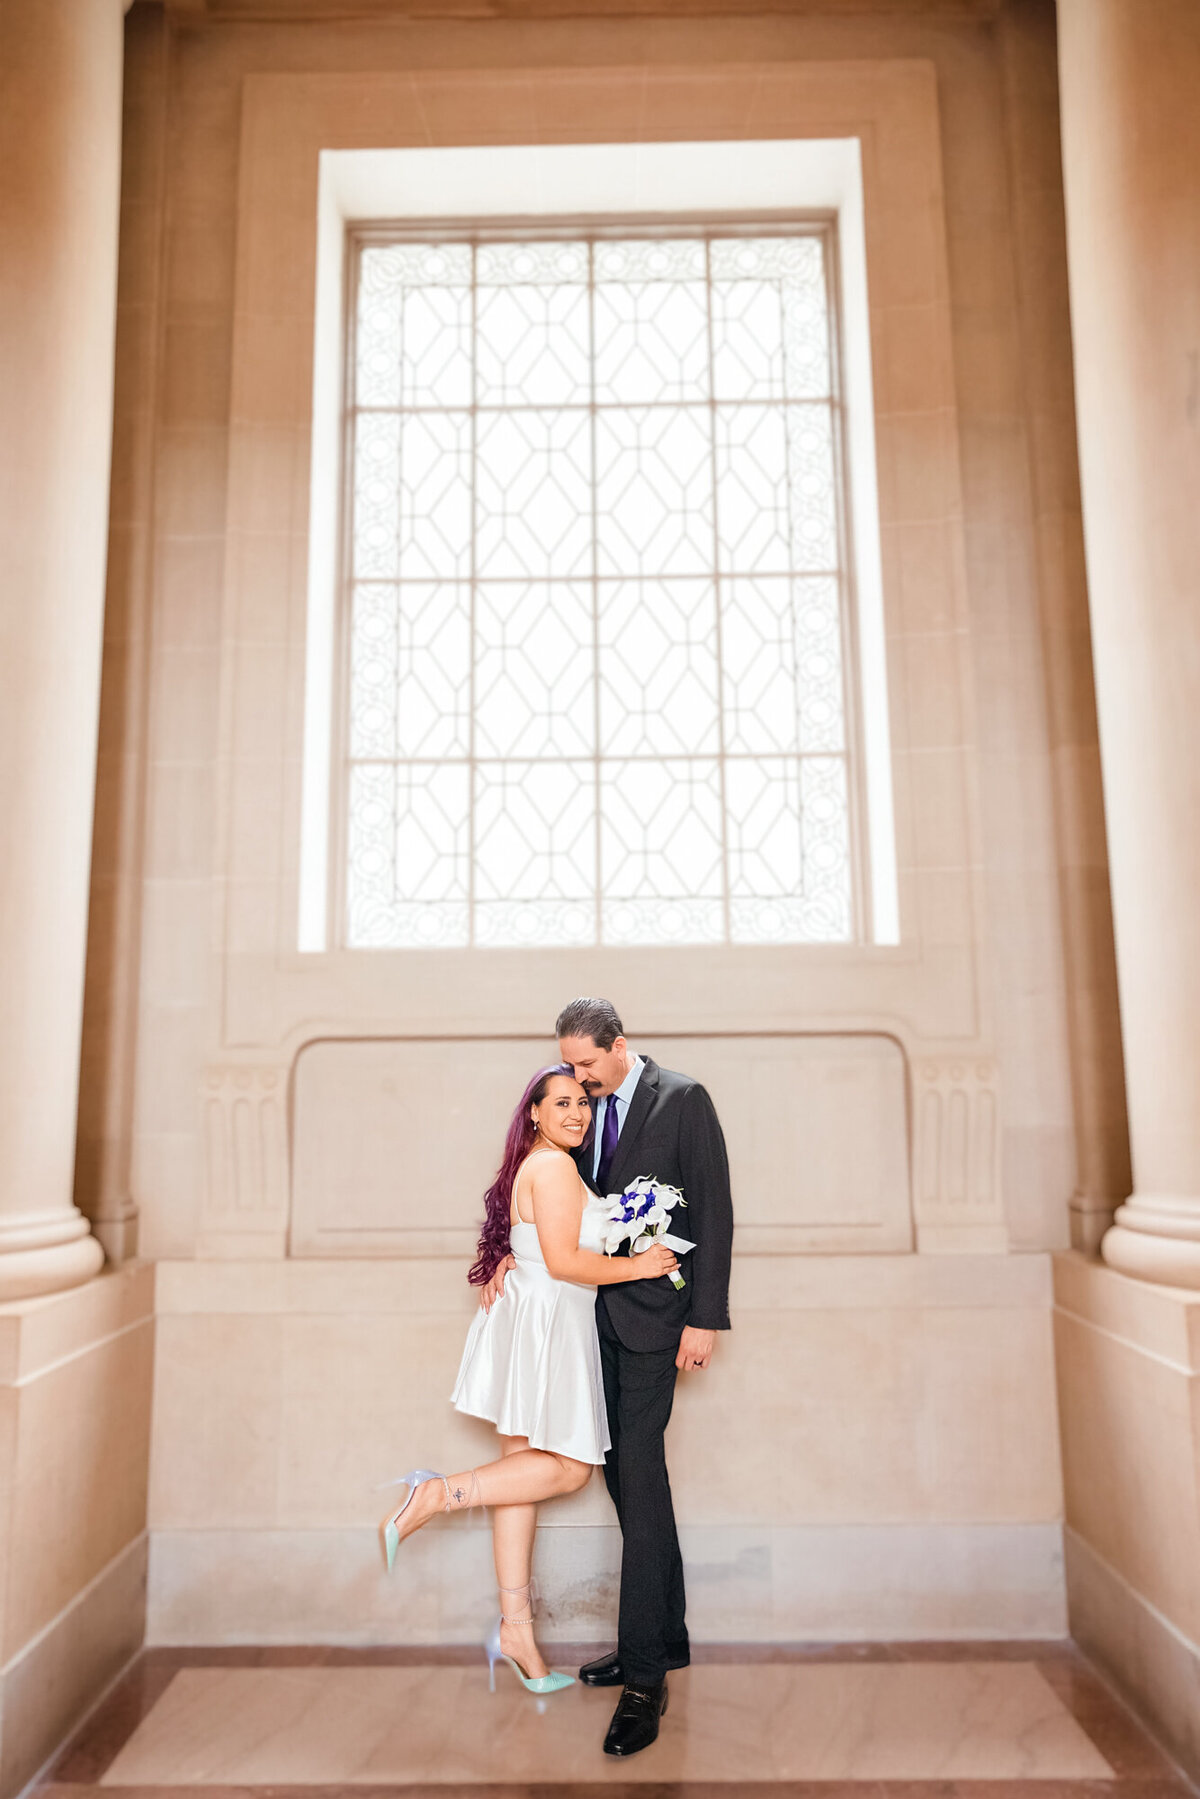 Eva and Tony-Wedding-San Francisco City Hall-Emily Pillon Photography-S-062223-14